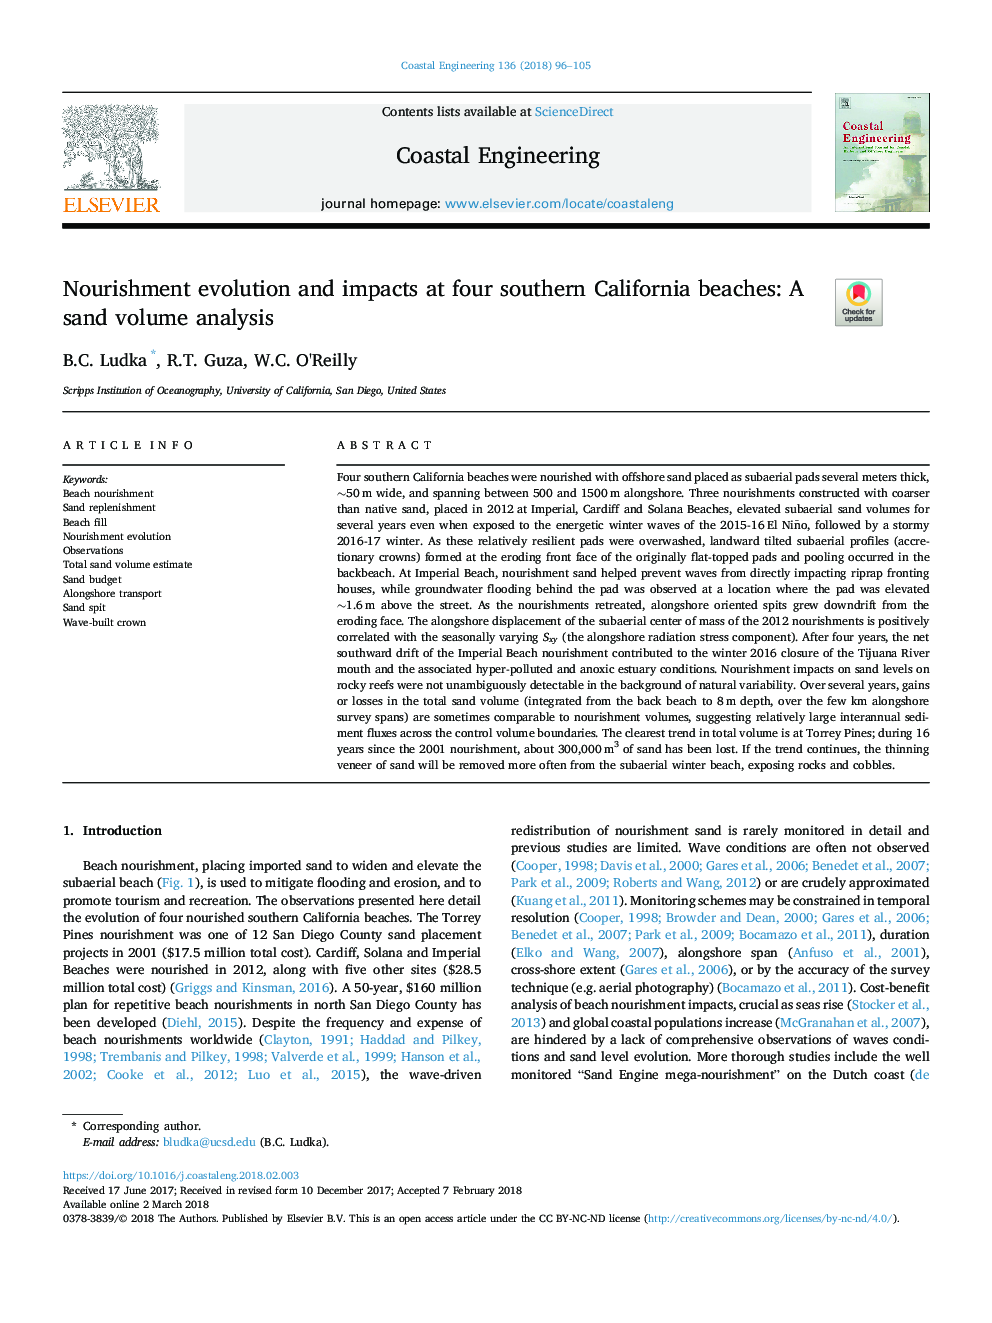 تکامل تغذیه و اثرات در چهار ساحل جنوبی کالیفرنیا: تجزیه و تحلیل حجم شن و ماسه 